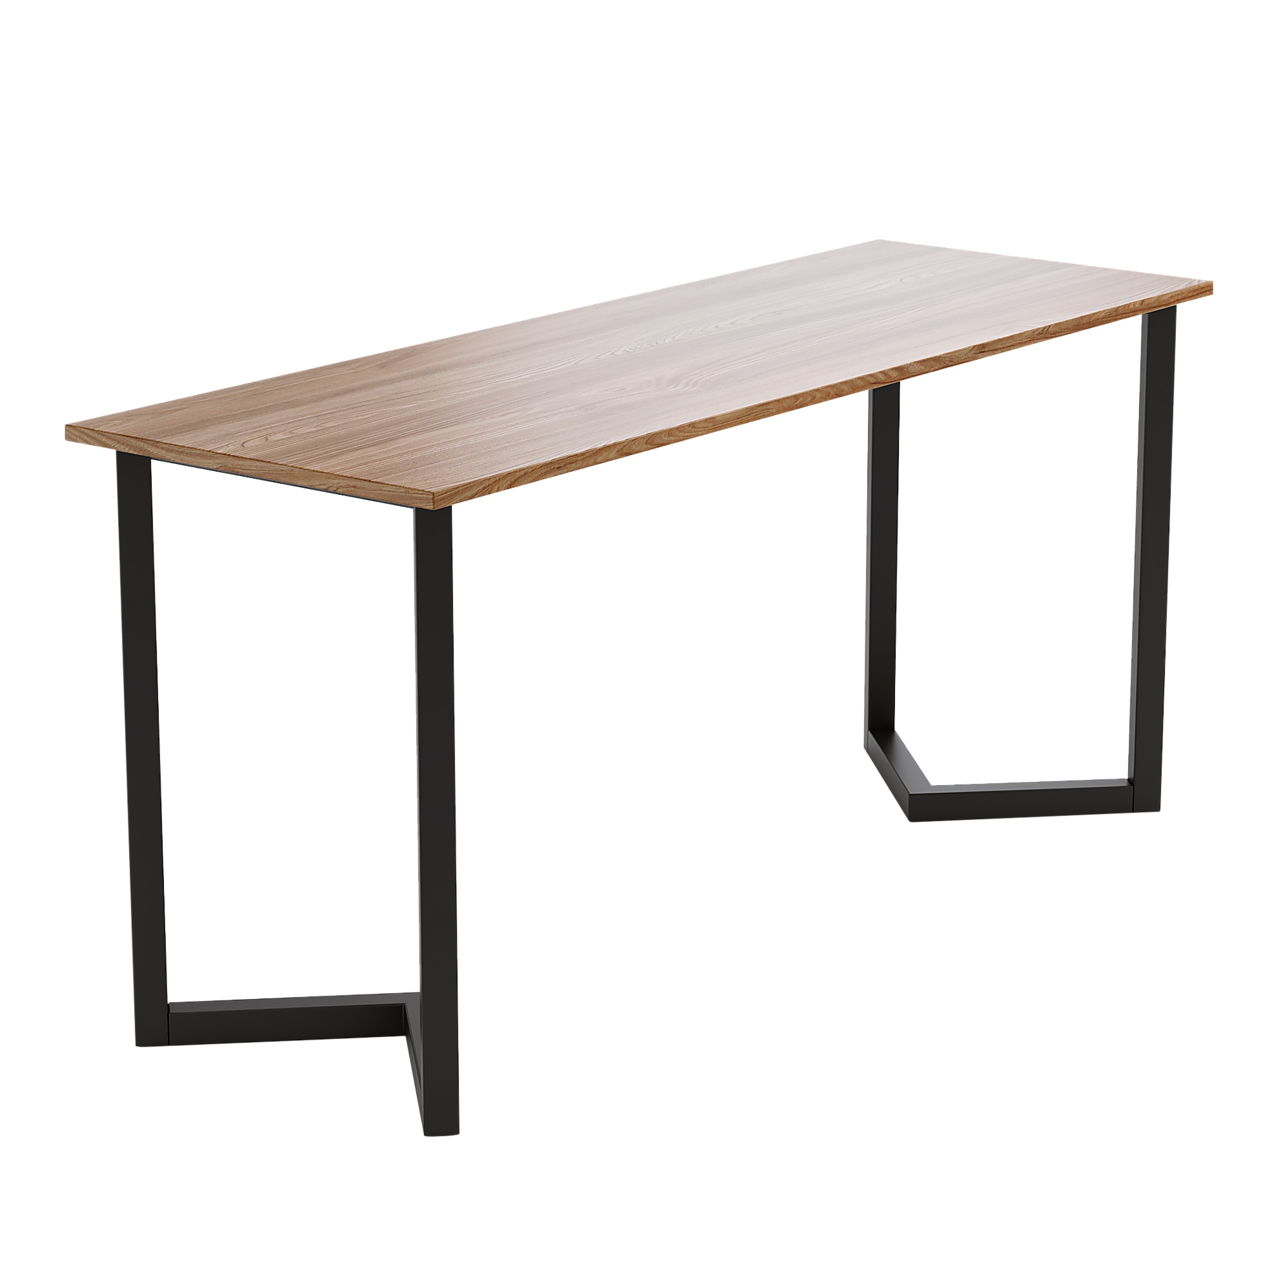 V Shaped Table Bench Desk Legs Retro Industrial Design Fully Welded ...